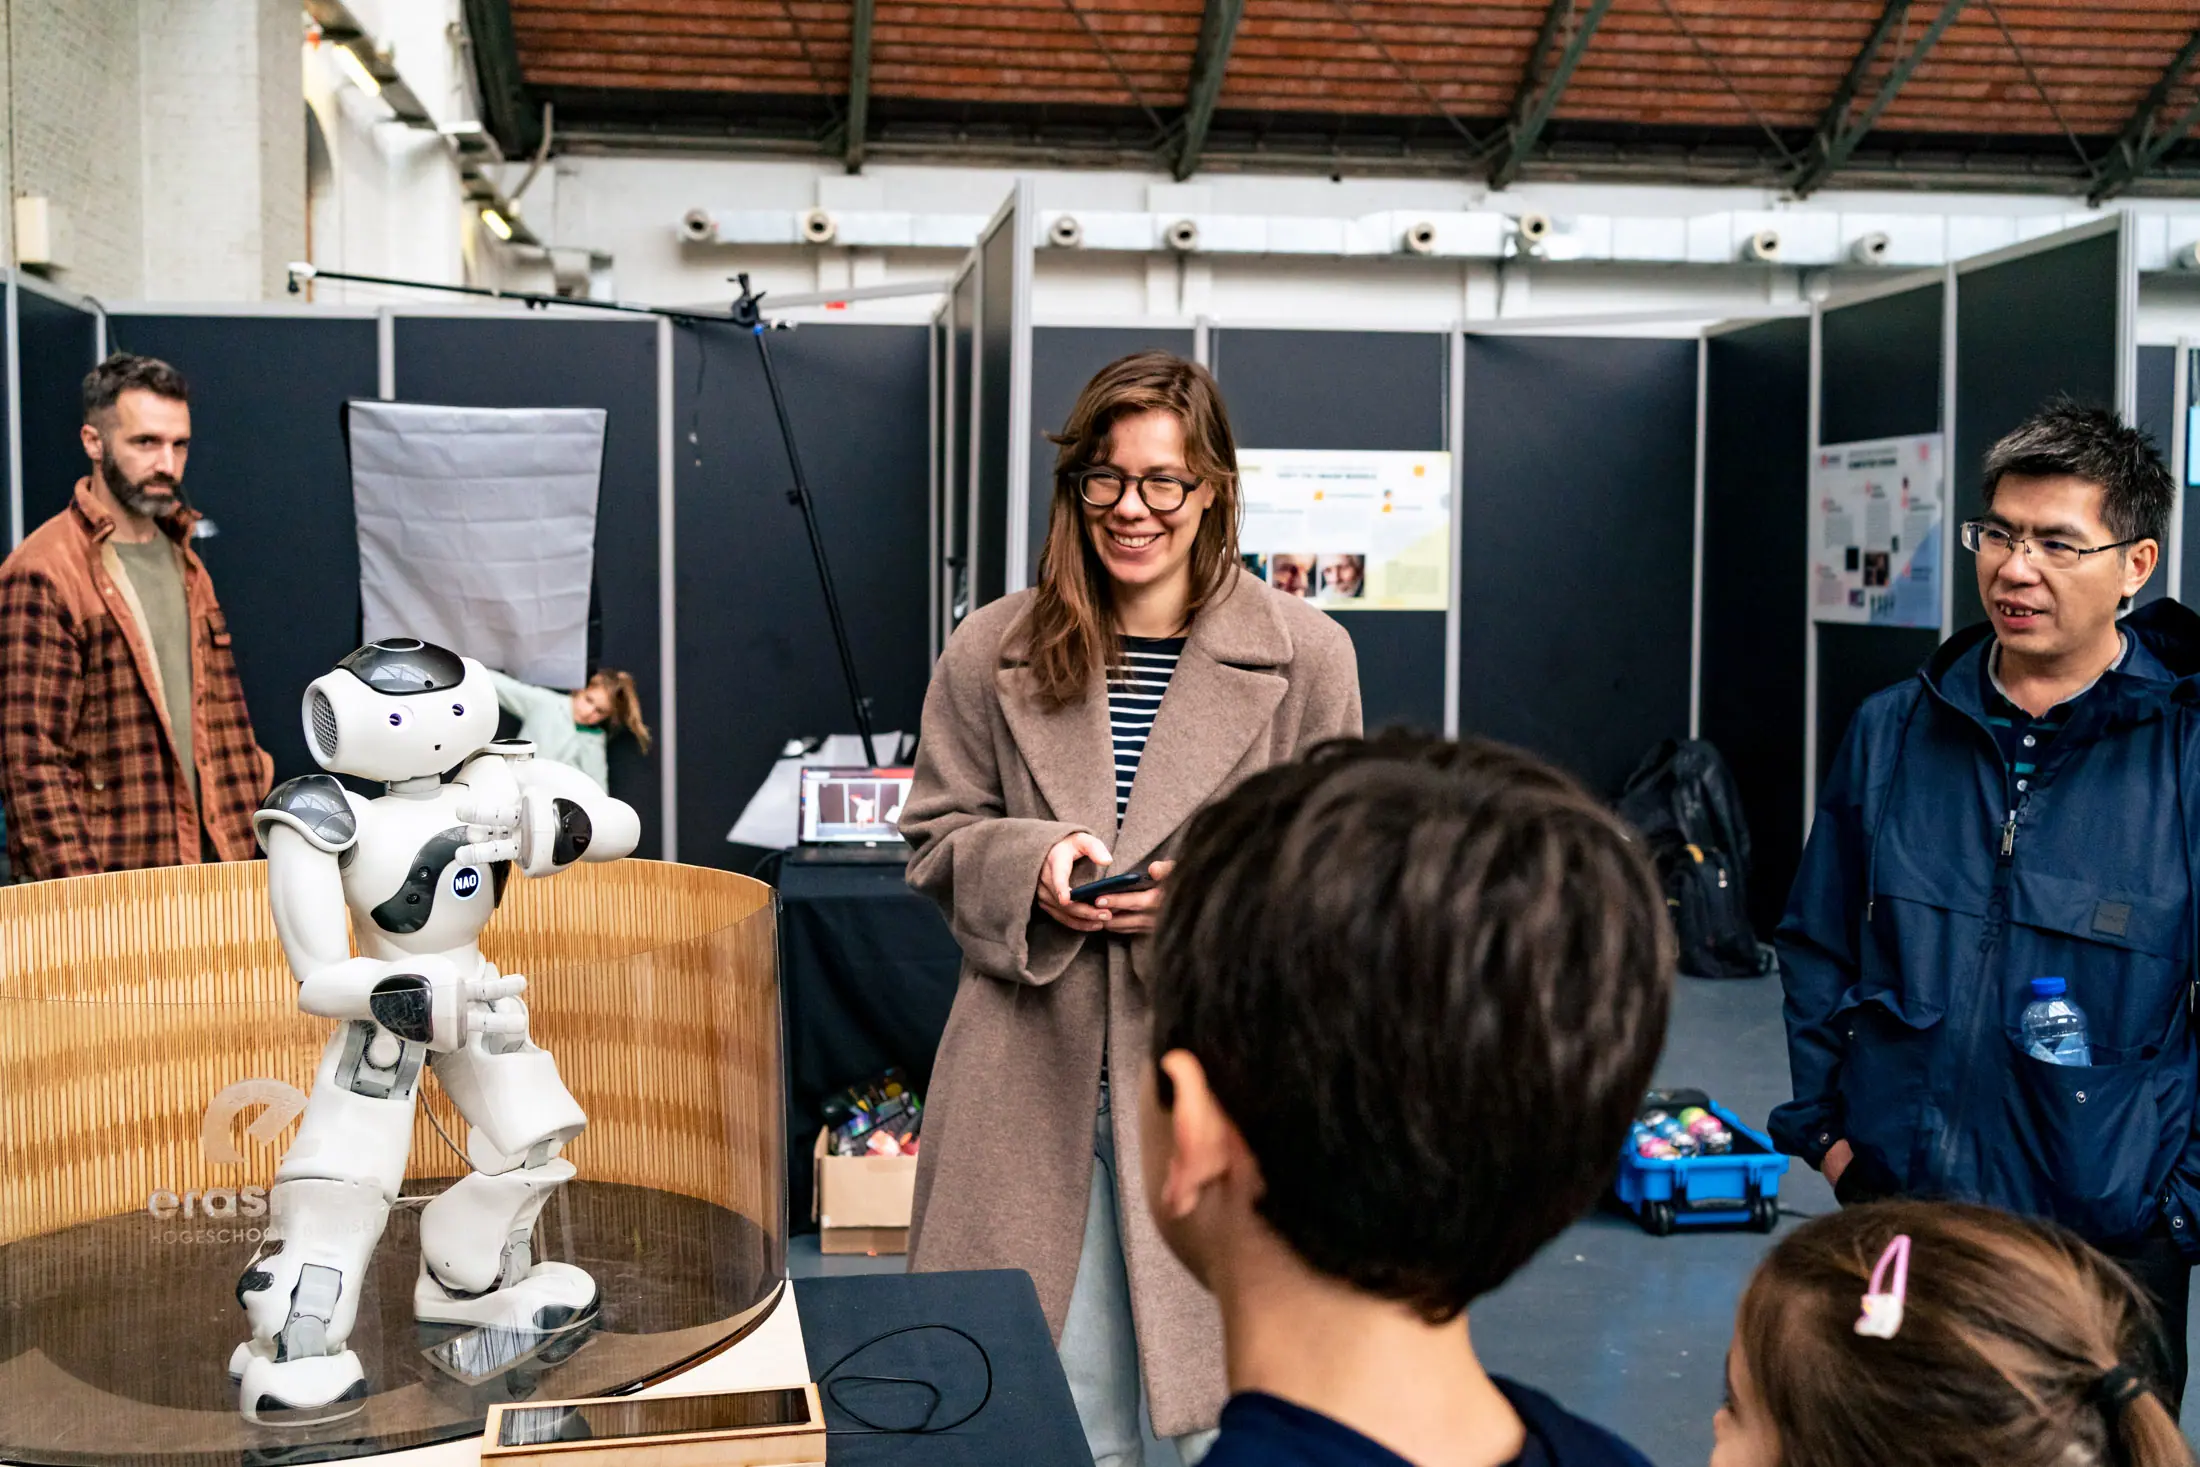 Une dame anime un robot qui fait rire les enfants au I love science festival à Bruxelles